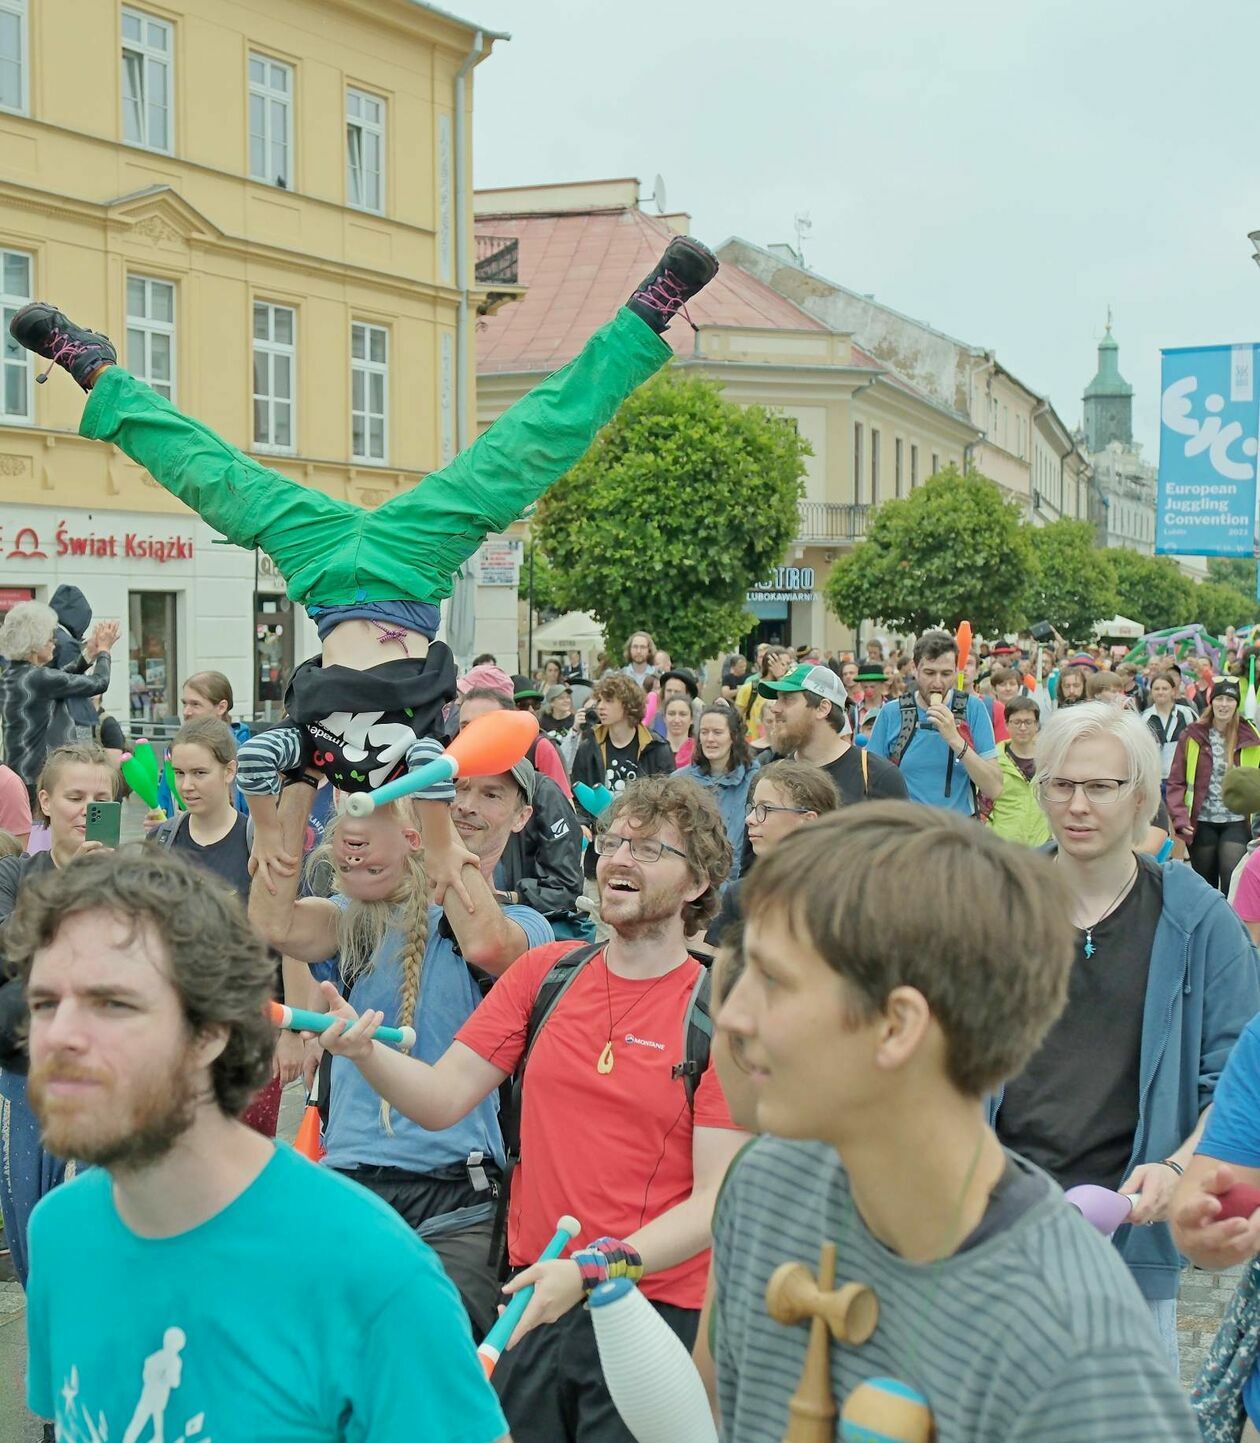  45. Europejska Konwencja Żonglerska - Cyrkowa parada na pożegnanie (zdjęcie 34) - Autor: DW